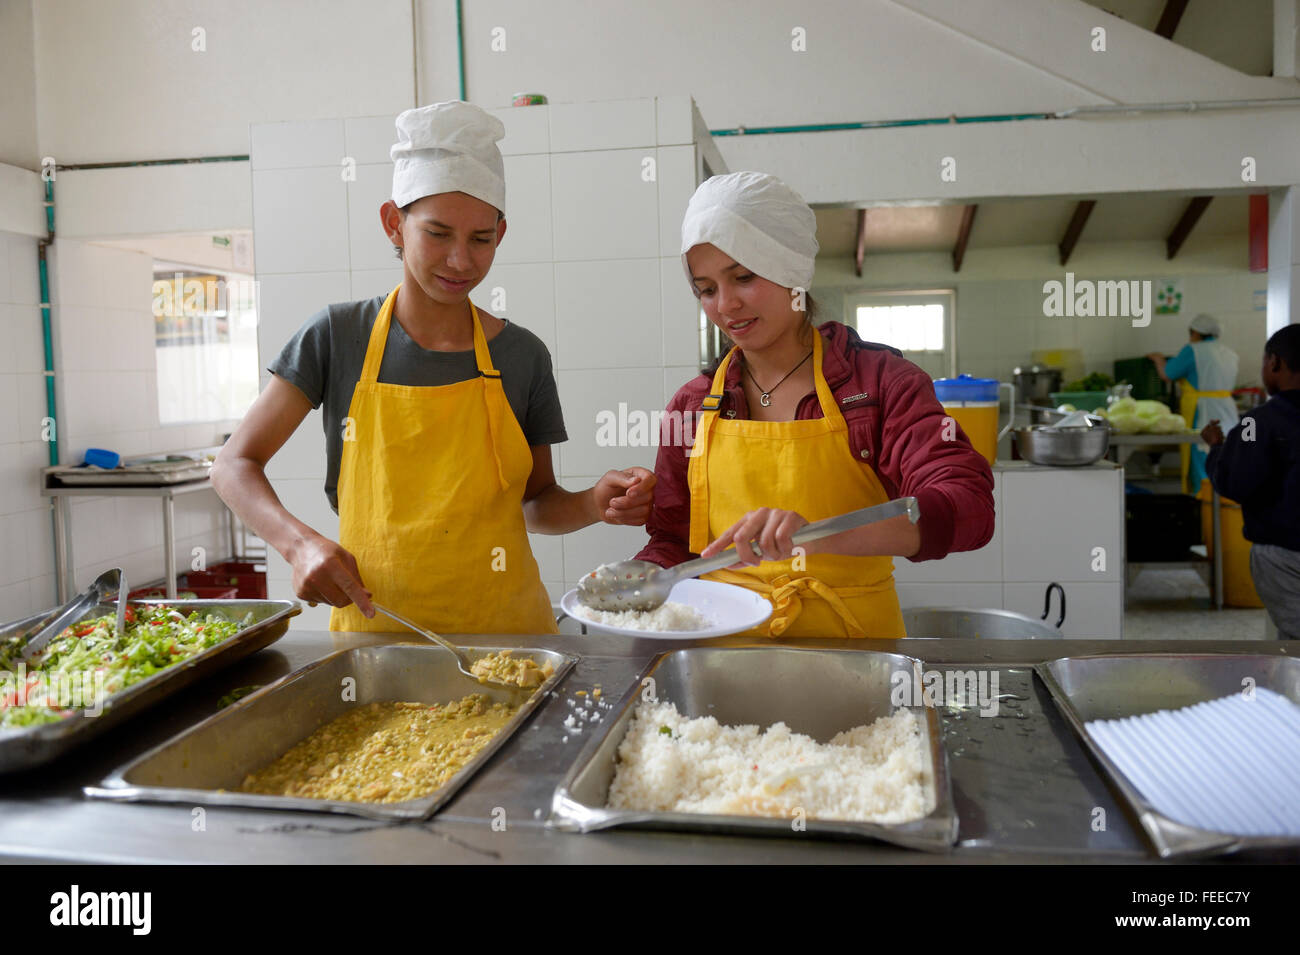 Teens presso il banco alimentare in una mensa, progetto sociale, Bogotà, Colombia Foto Stock